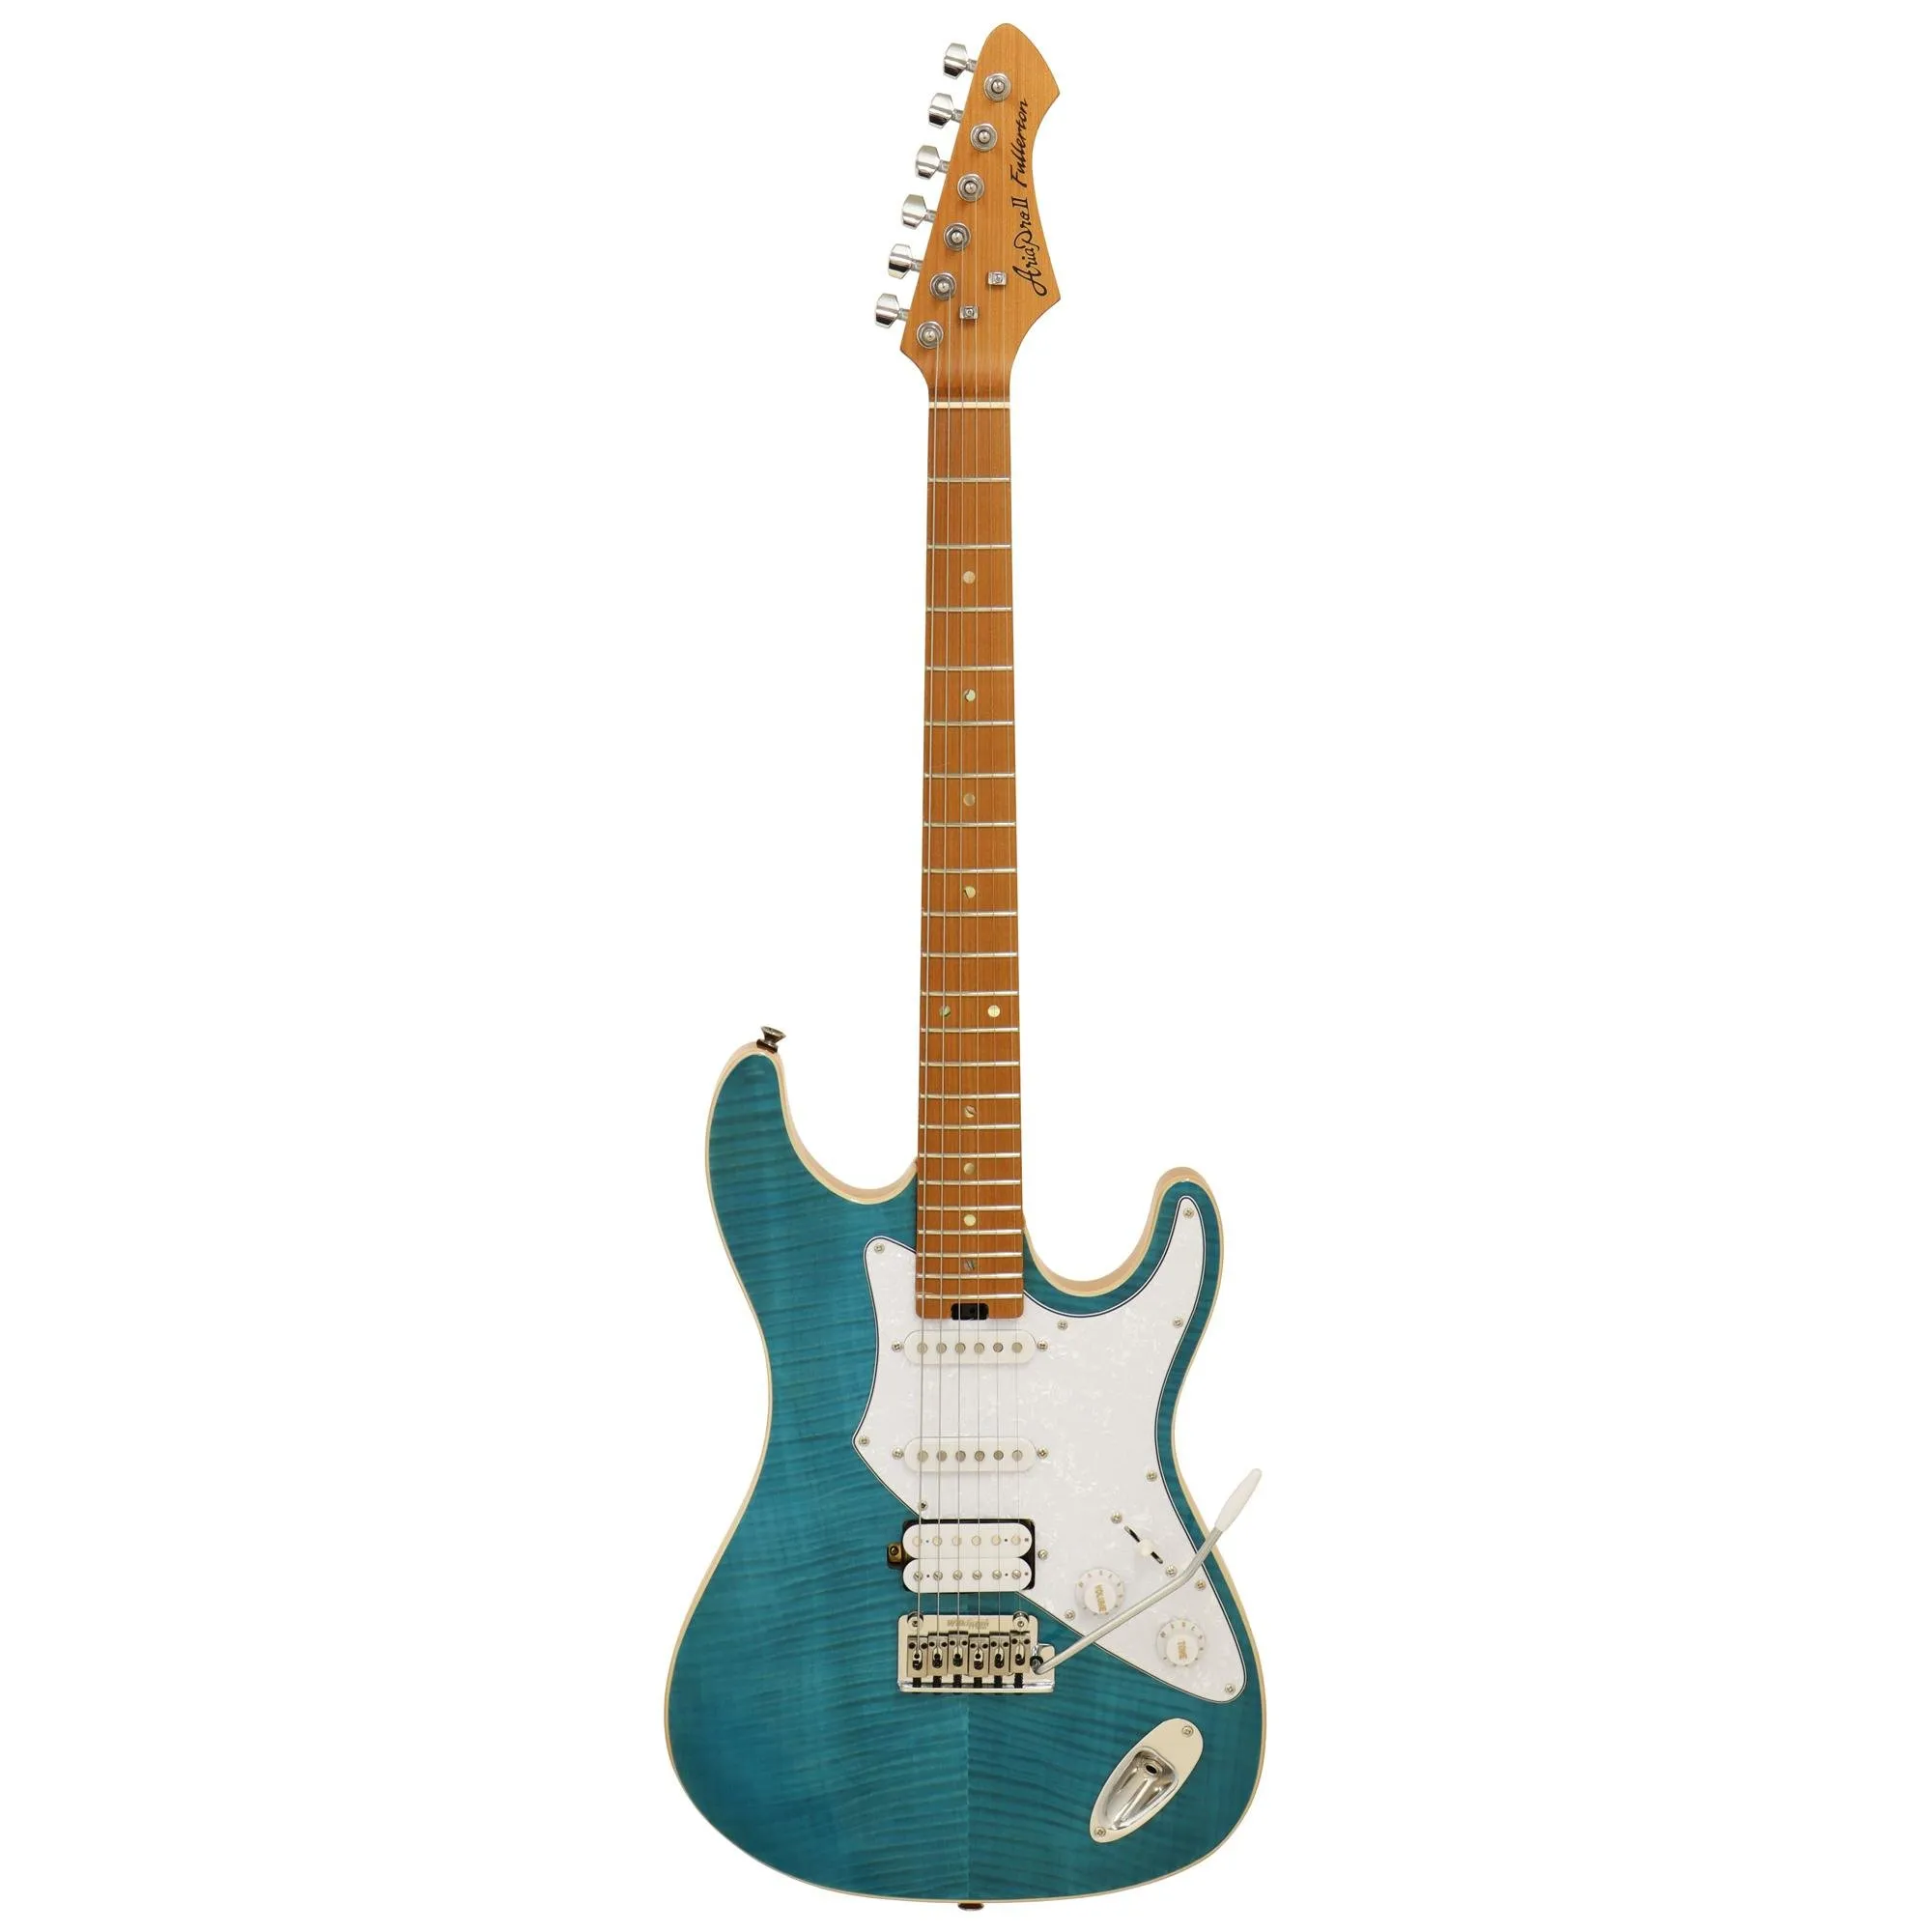 Guitarra Aria 714-MK2 Fullerton Turquoise Blue por 2.904,00 à vista no boleto/pix ou parcele em até 12x sem juros. Compre na loja Mundomax!